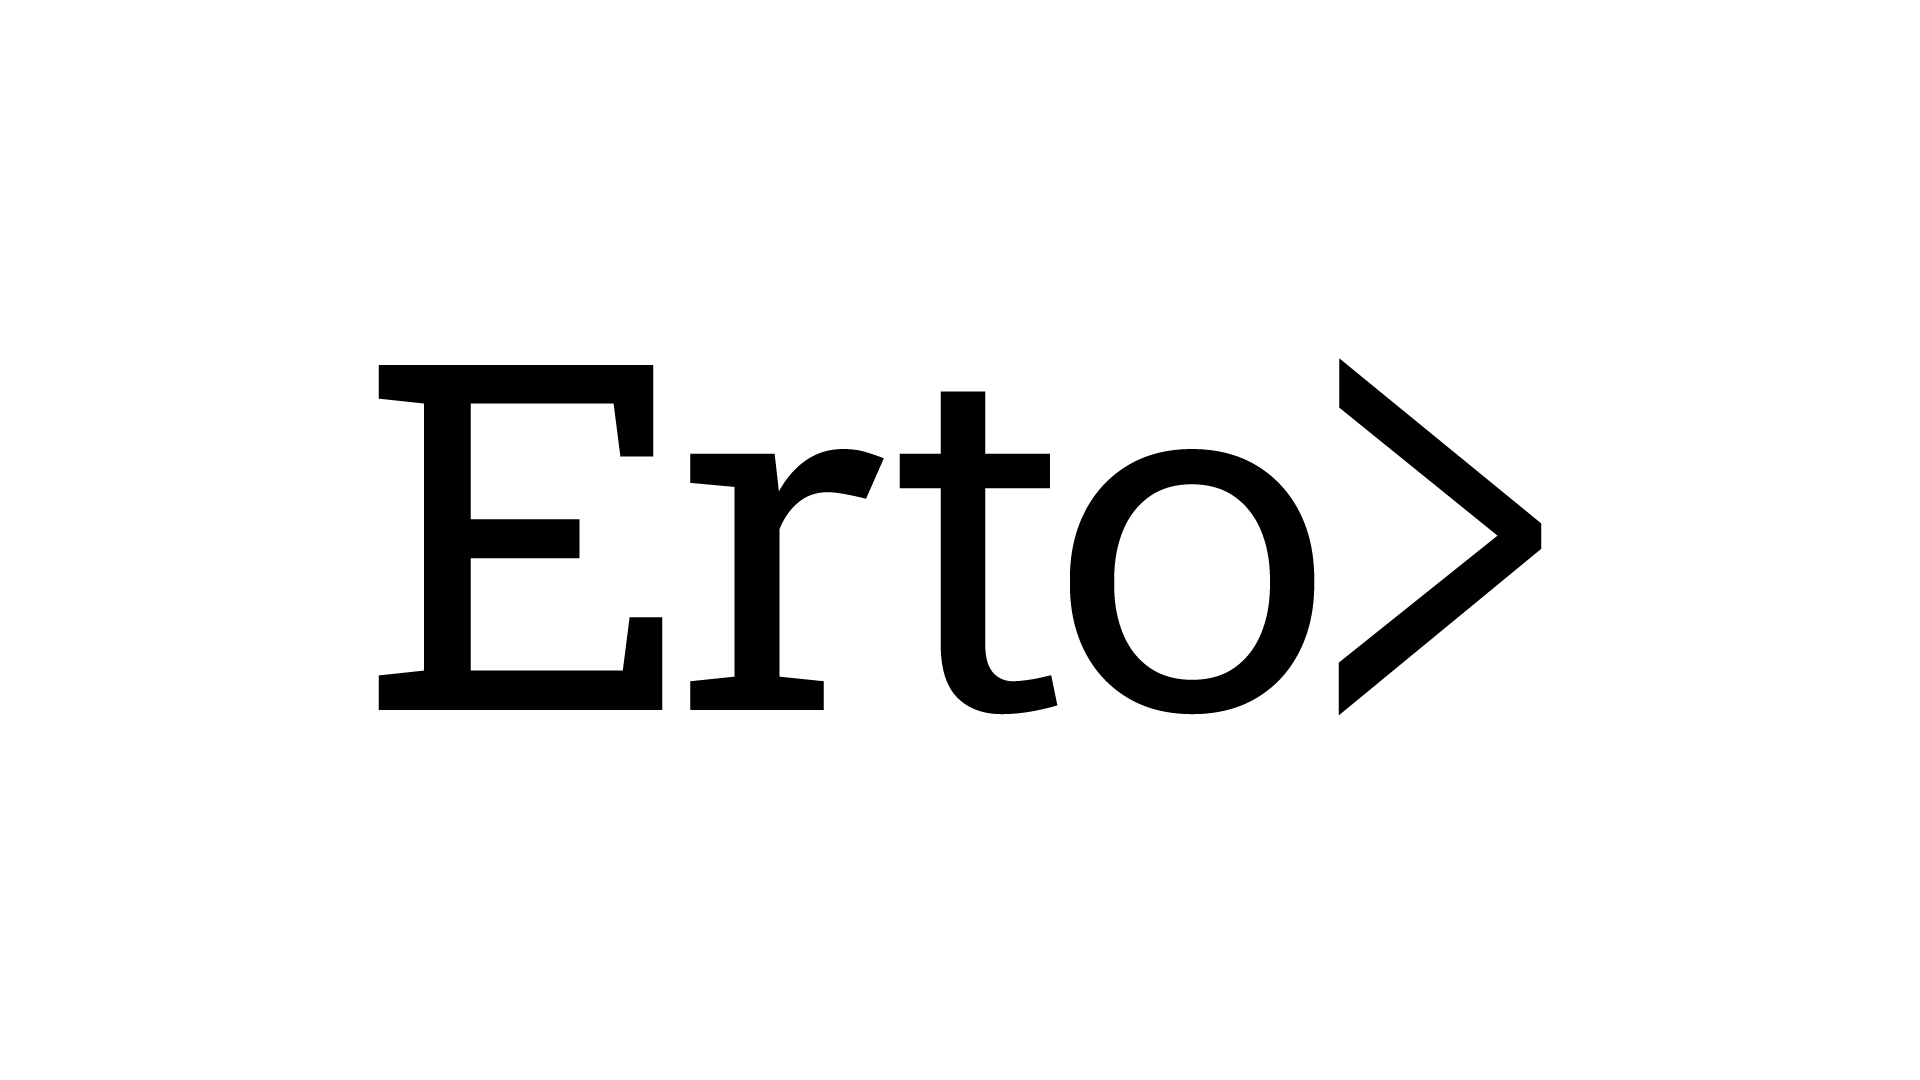 Erton logo, joka johtaa Erto ry:n sivuille.